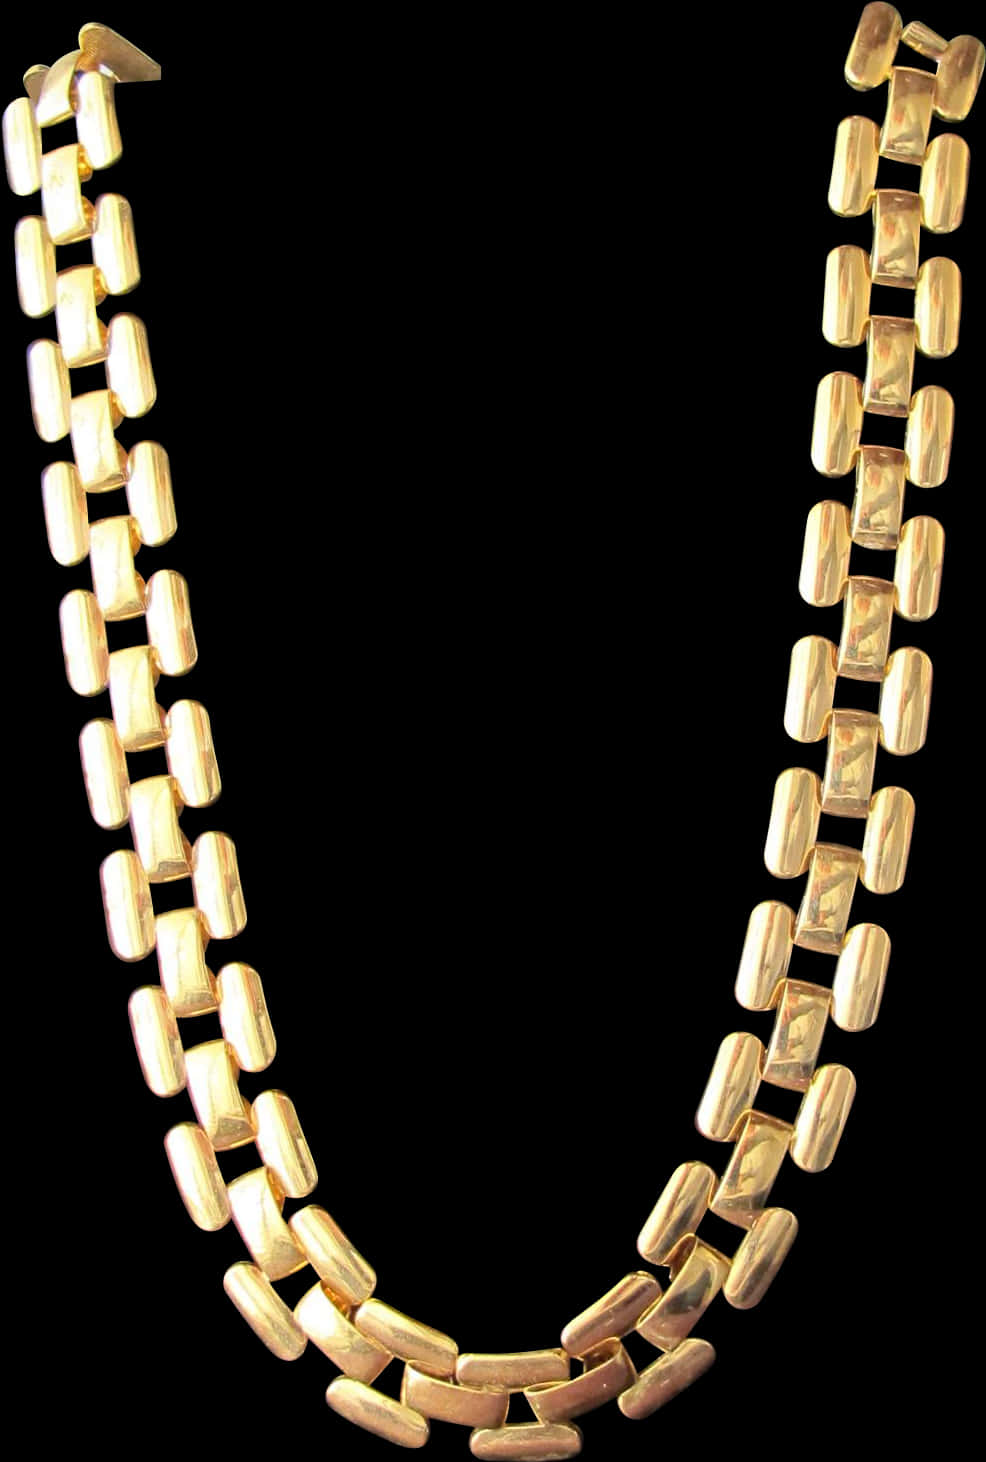 Gold Link Necklace Black Background PNG